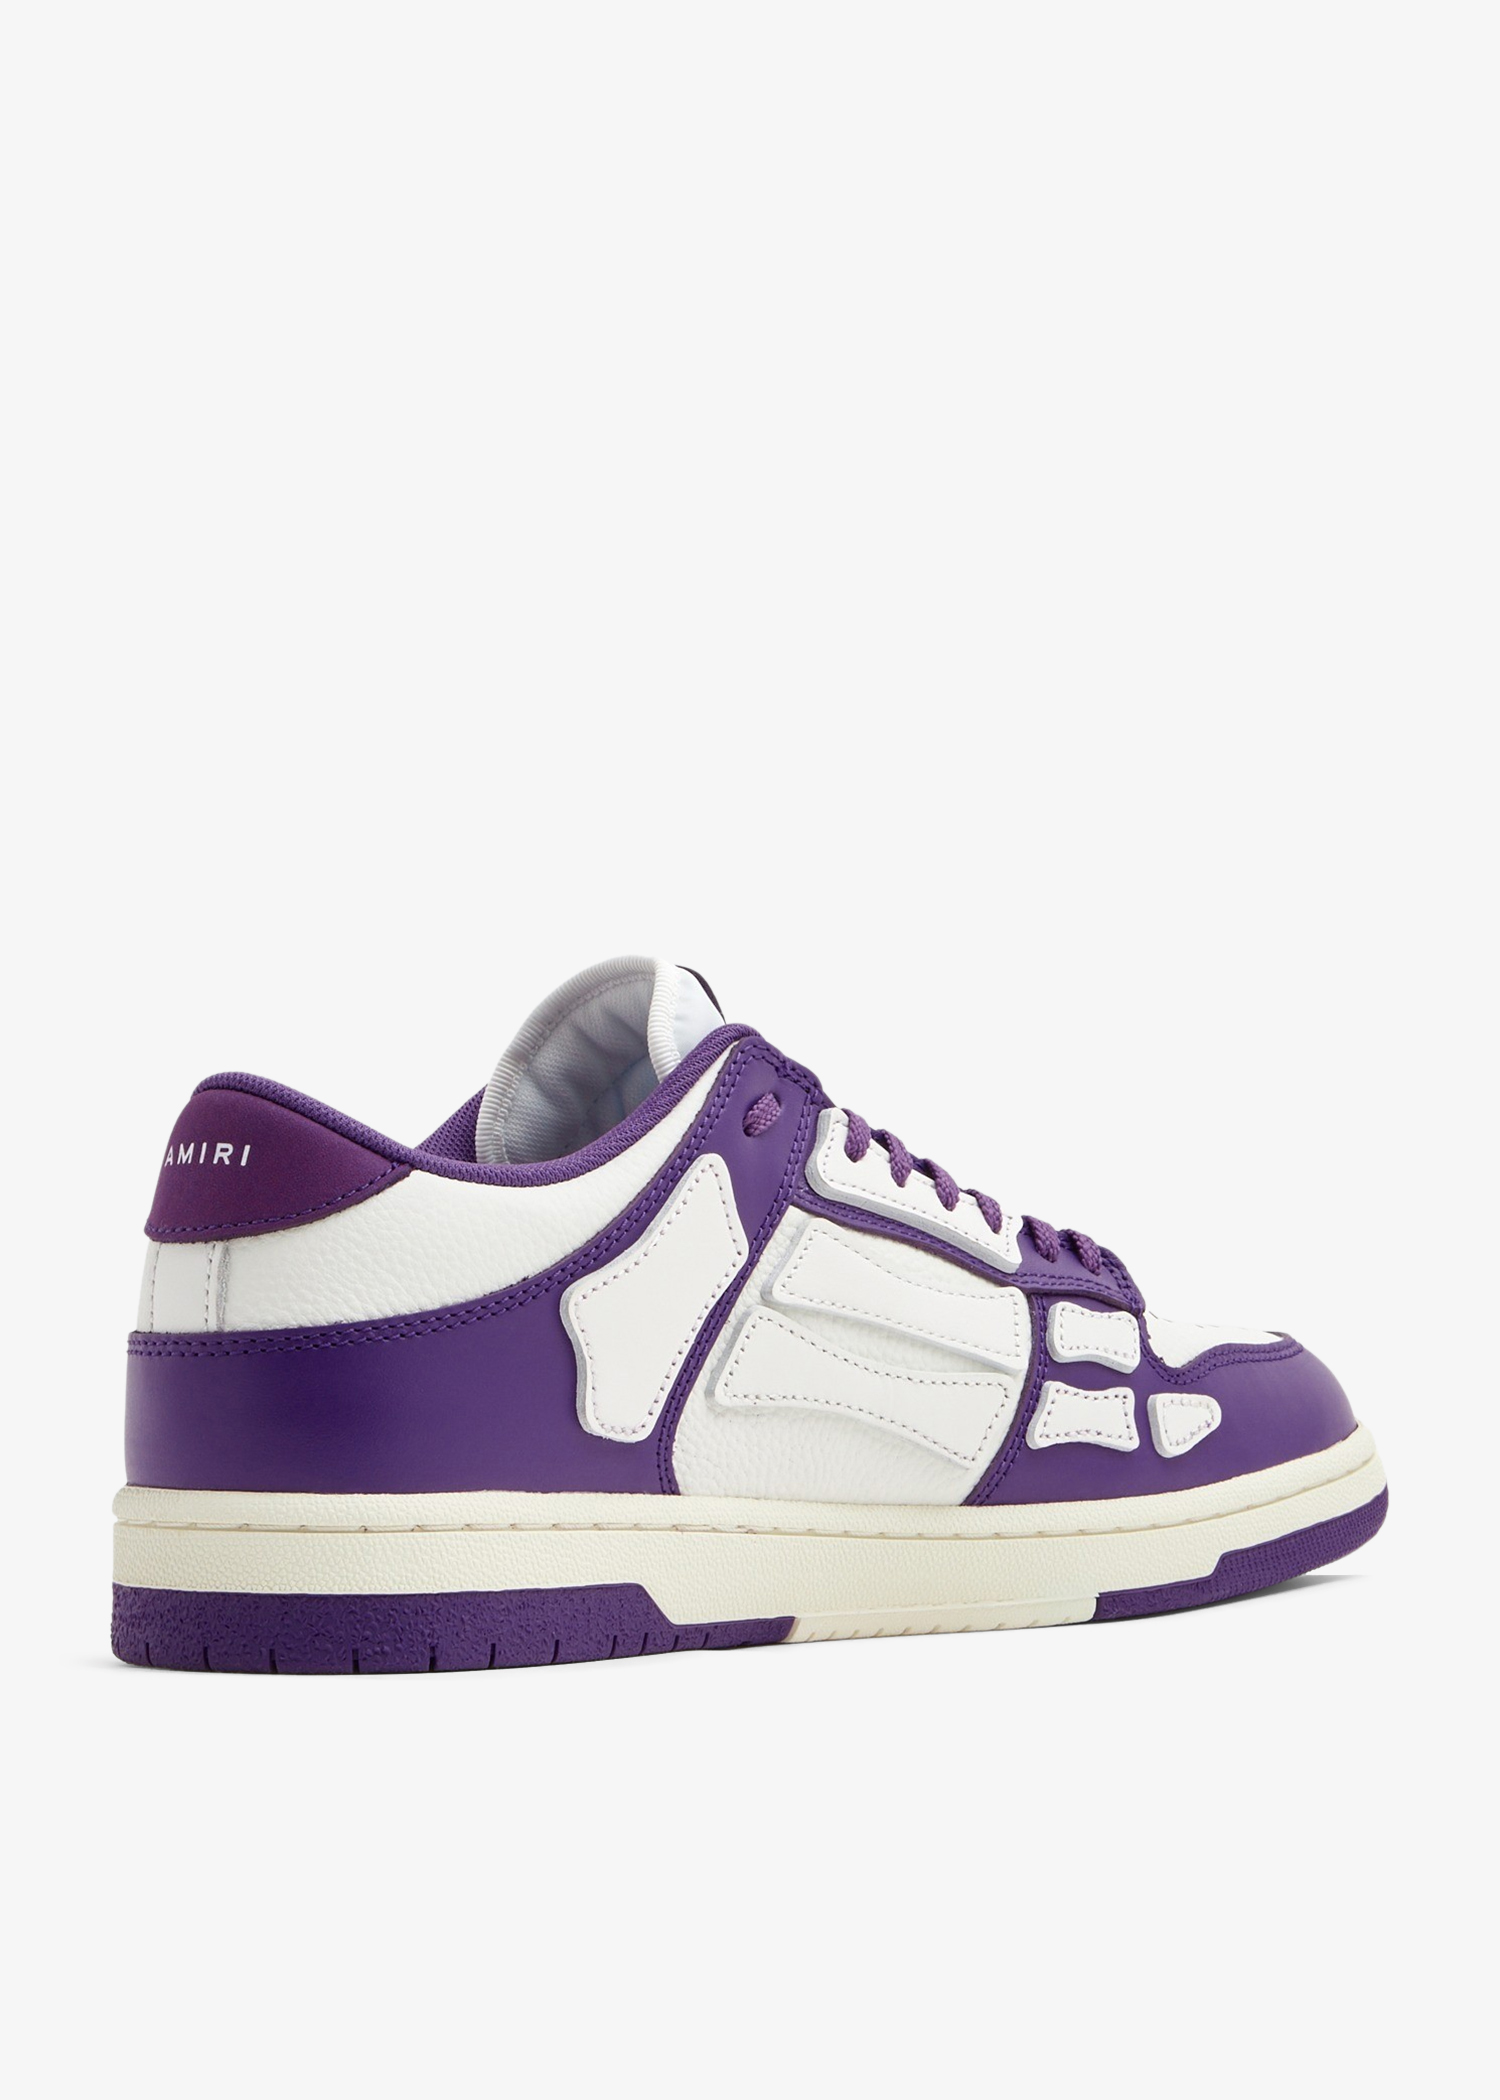 AMIRI Skeltop Low leather sneakers - Purple